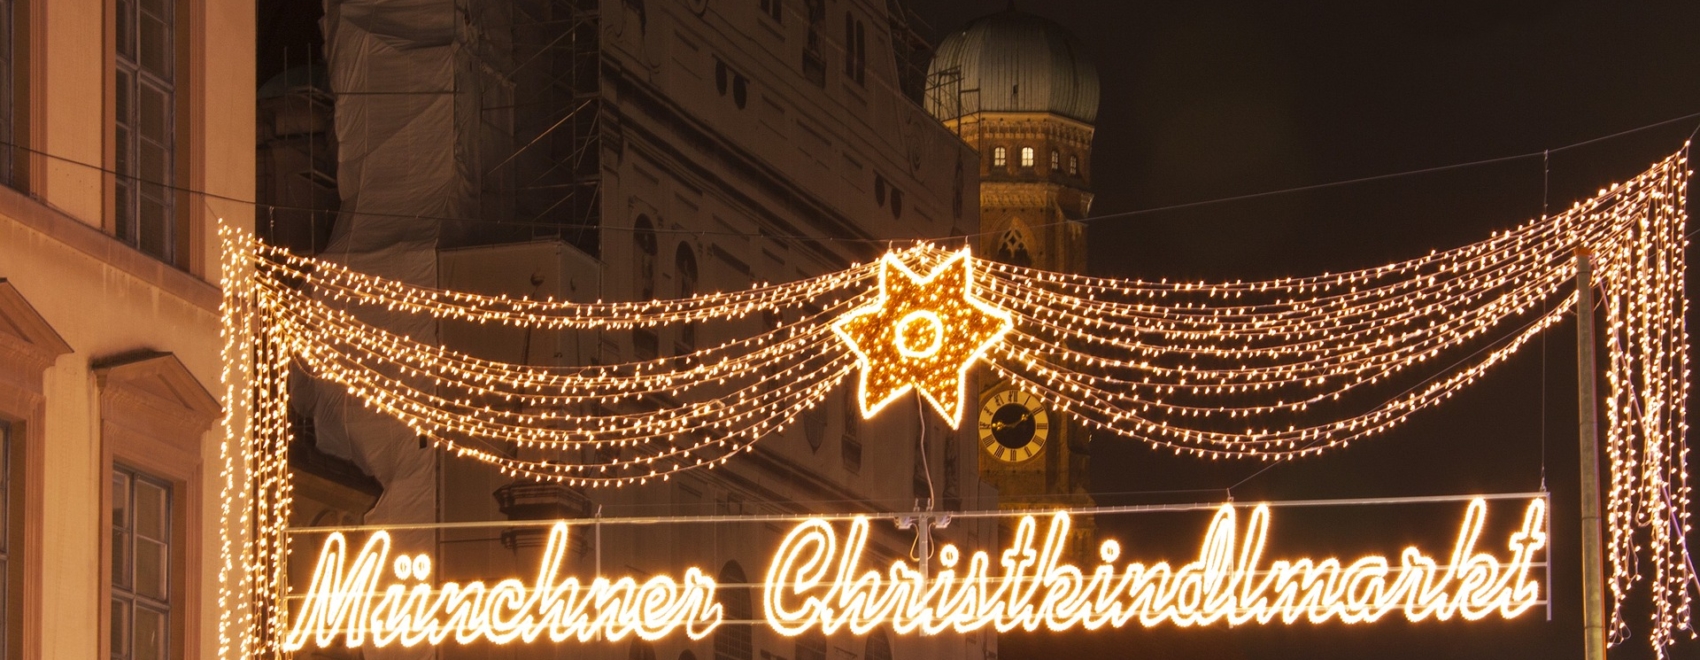 Münchner Christkindlmarkt Leuchtschrift